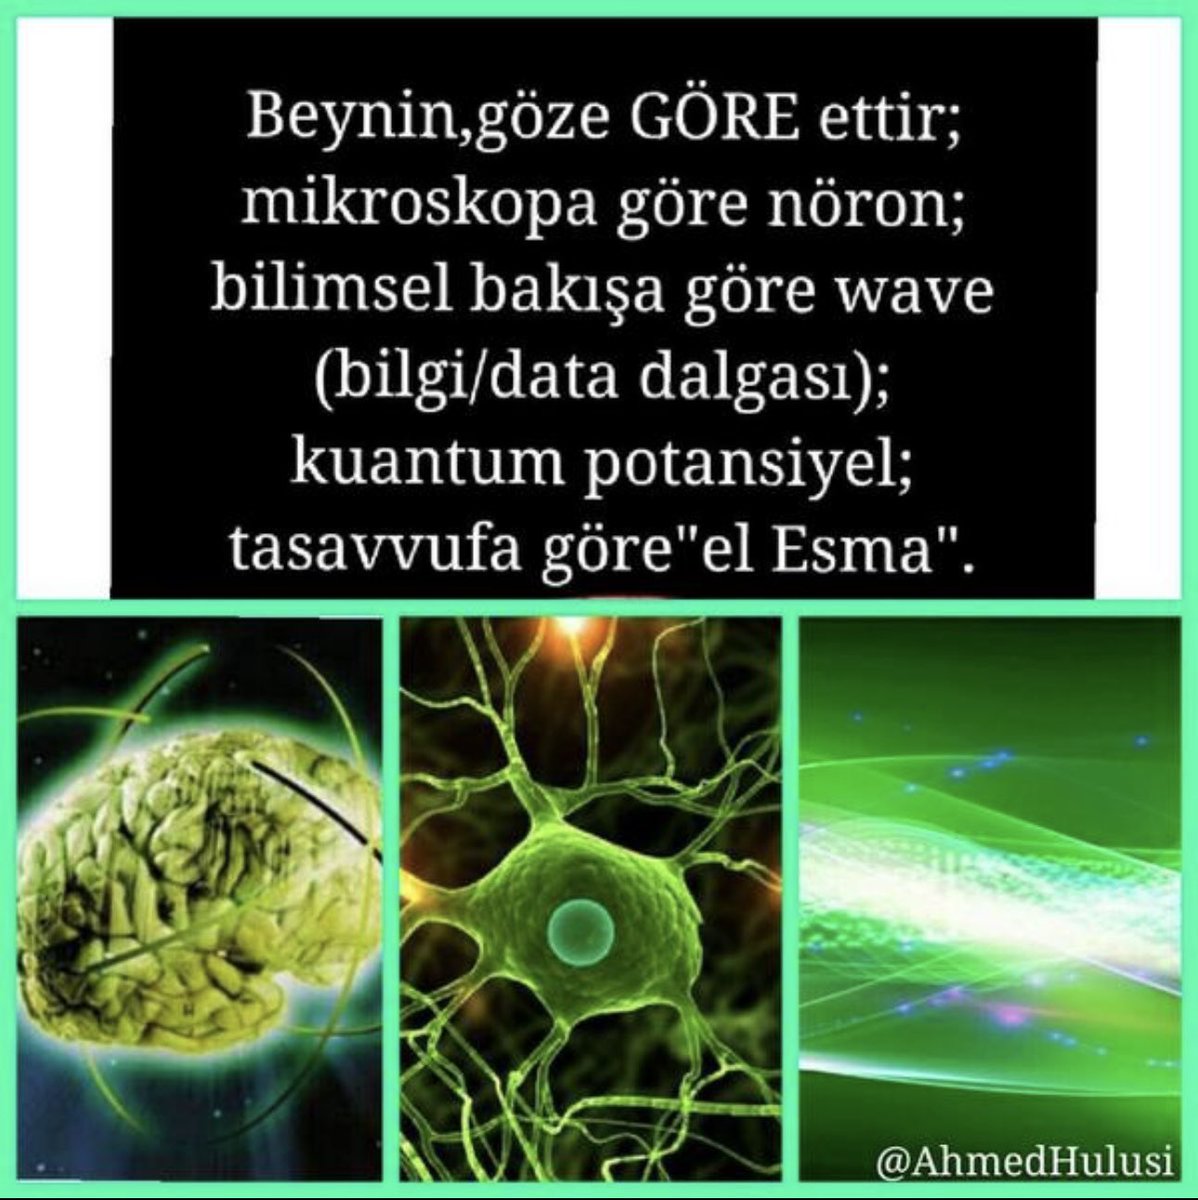 2010’da @AhmedHulusi anlatmış: Beynin, göze GÖRE, ettir; Mikroskopa göre nöron; Bilimsel bakışa göre wave (bilgi/data dalgası); Kuantum potansiyel; Tasavvufa göre 'el Esma'.